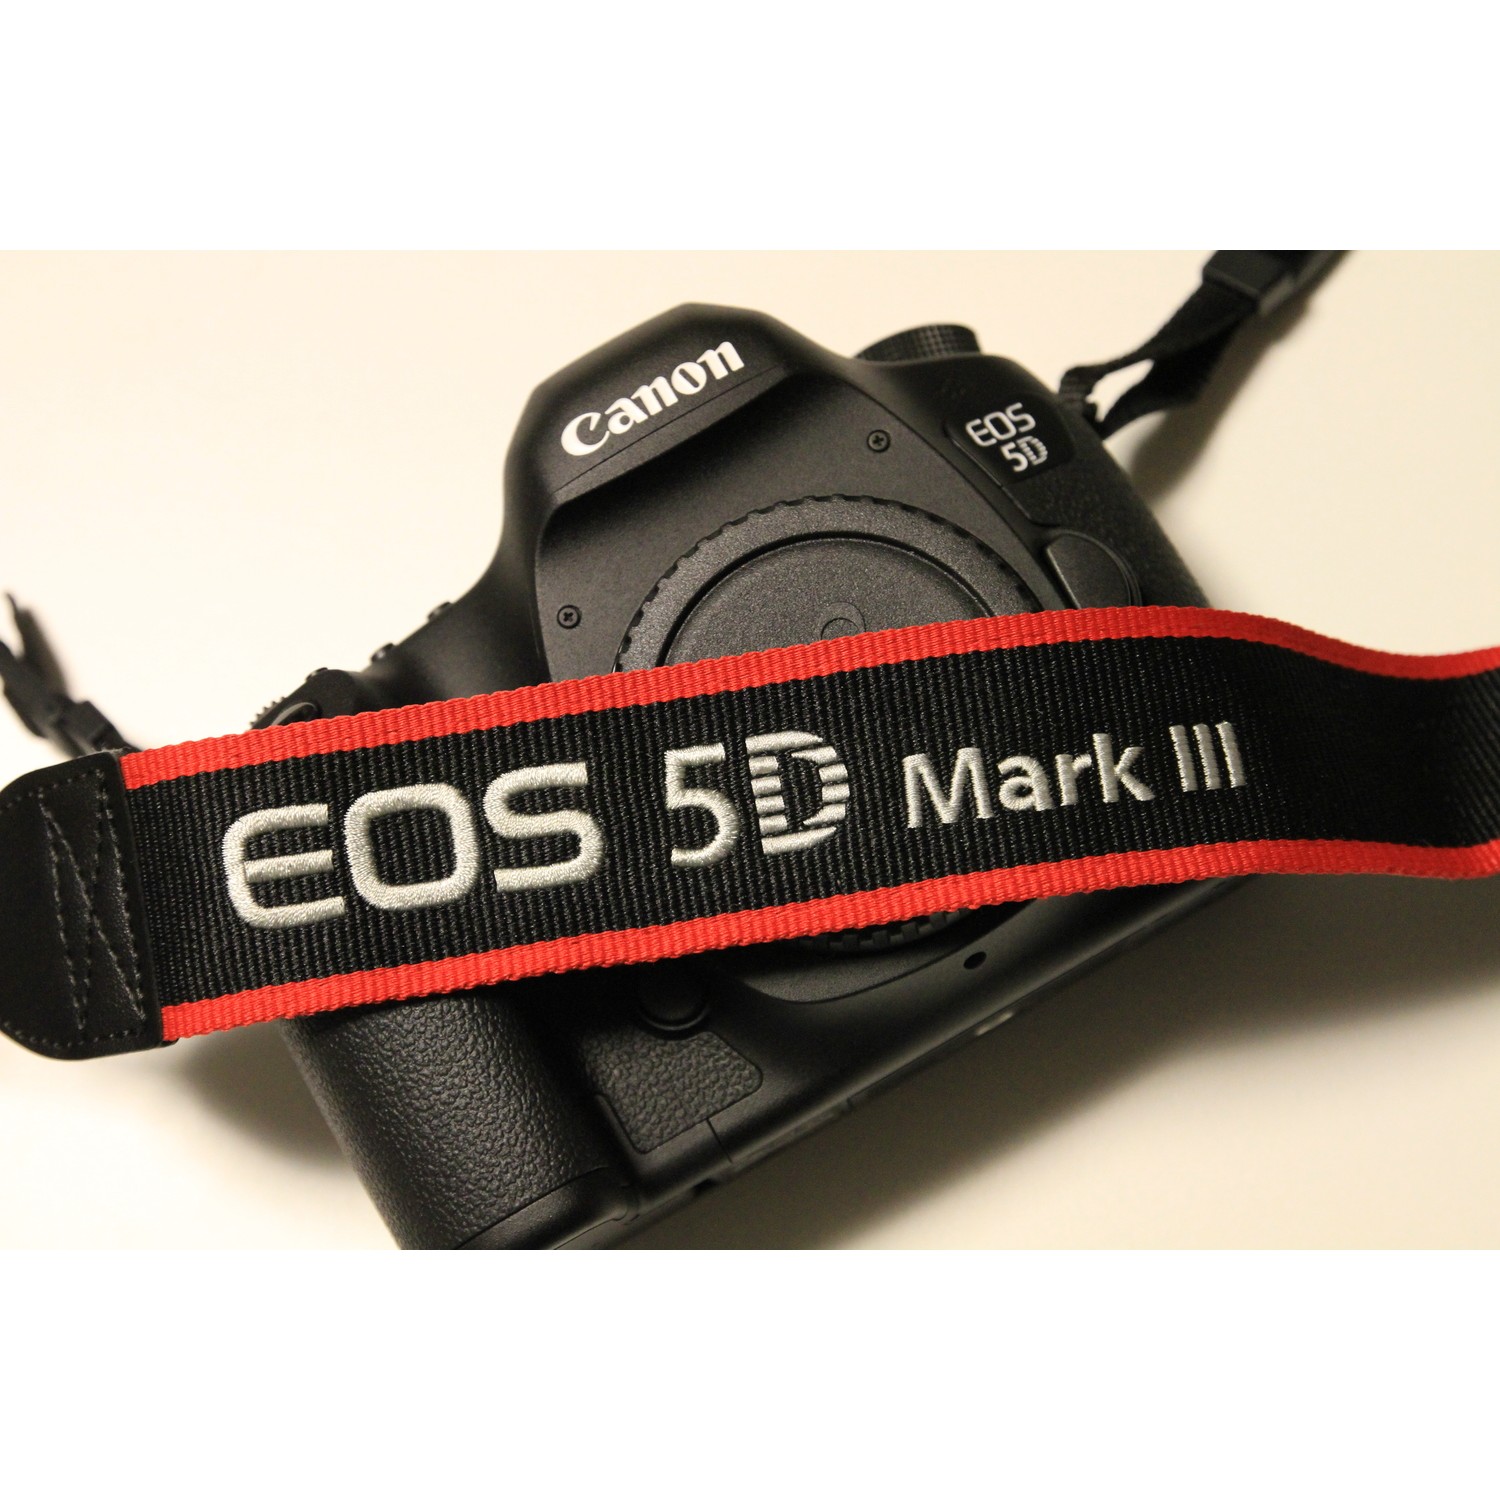 Canon 5D Mark3 DSLR Omuz Askısı Fiyatı - Taksit Seçenekleri